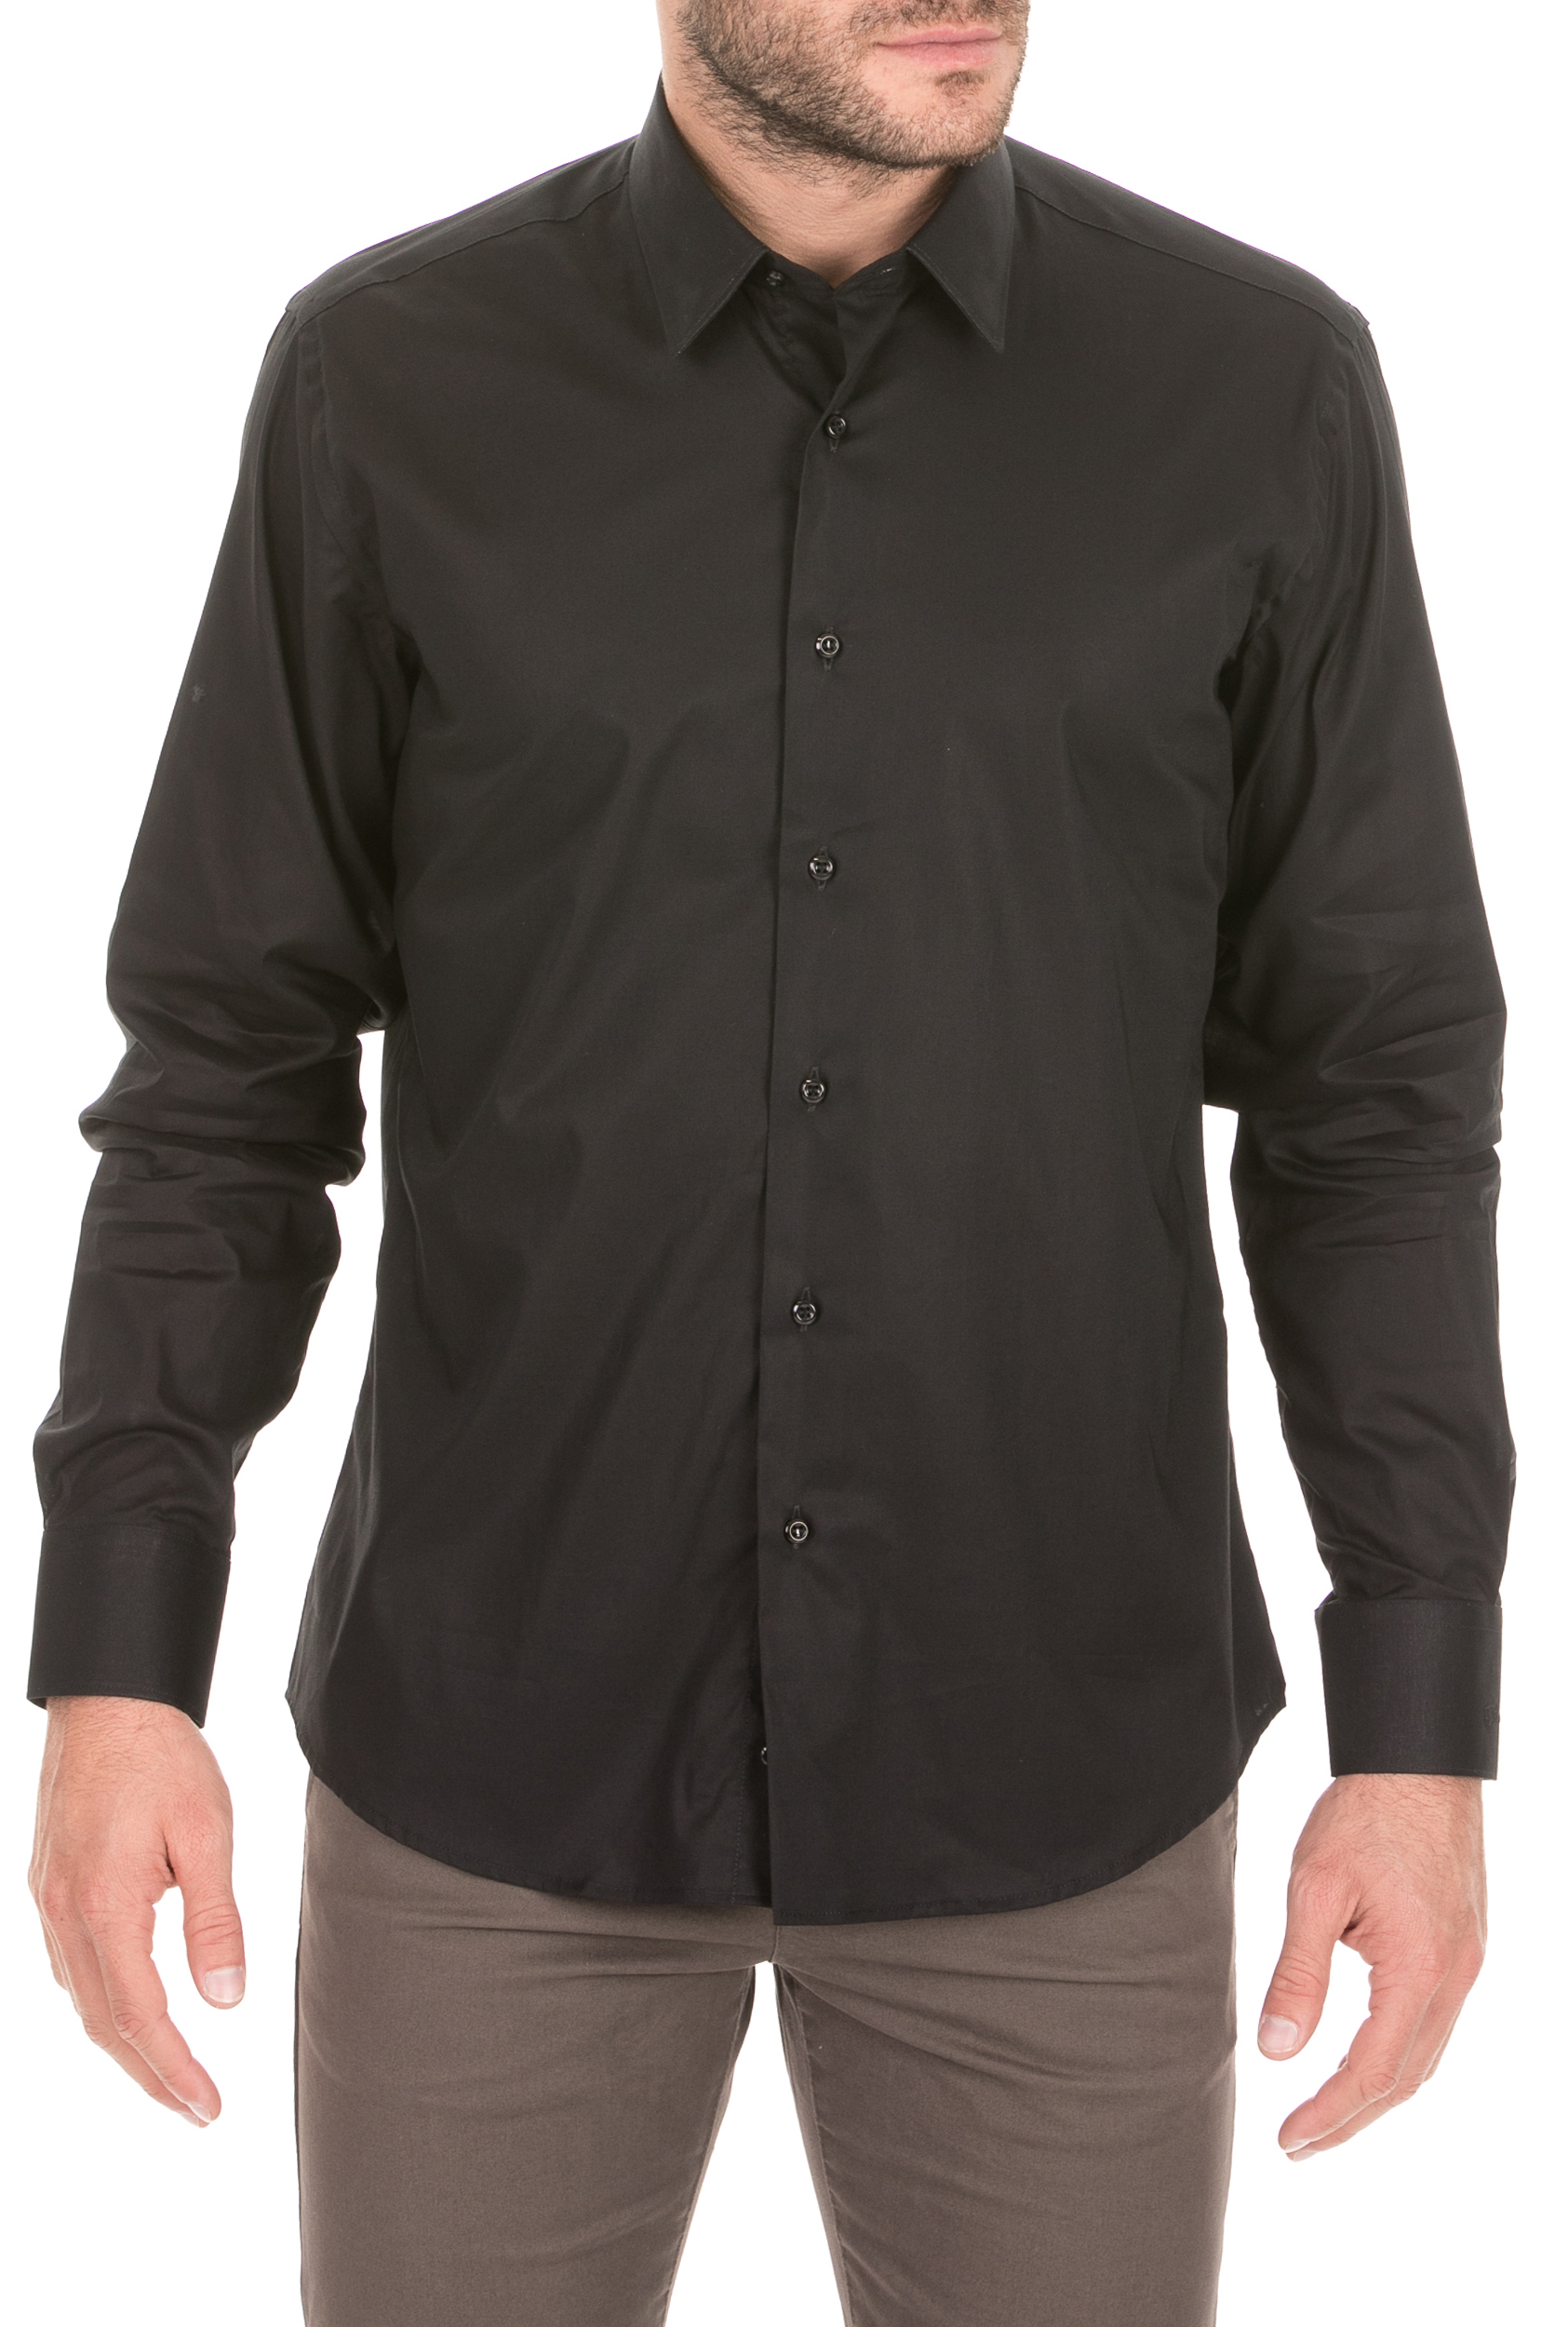 Ανδρικά/Ρούχα/Πουκάμισα/Μακρυμάνικα JUST CAVALLI - Ανδρικό πουκάμισο JUST CAVALLI μαύρο